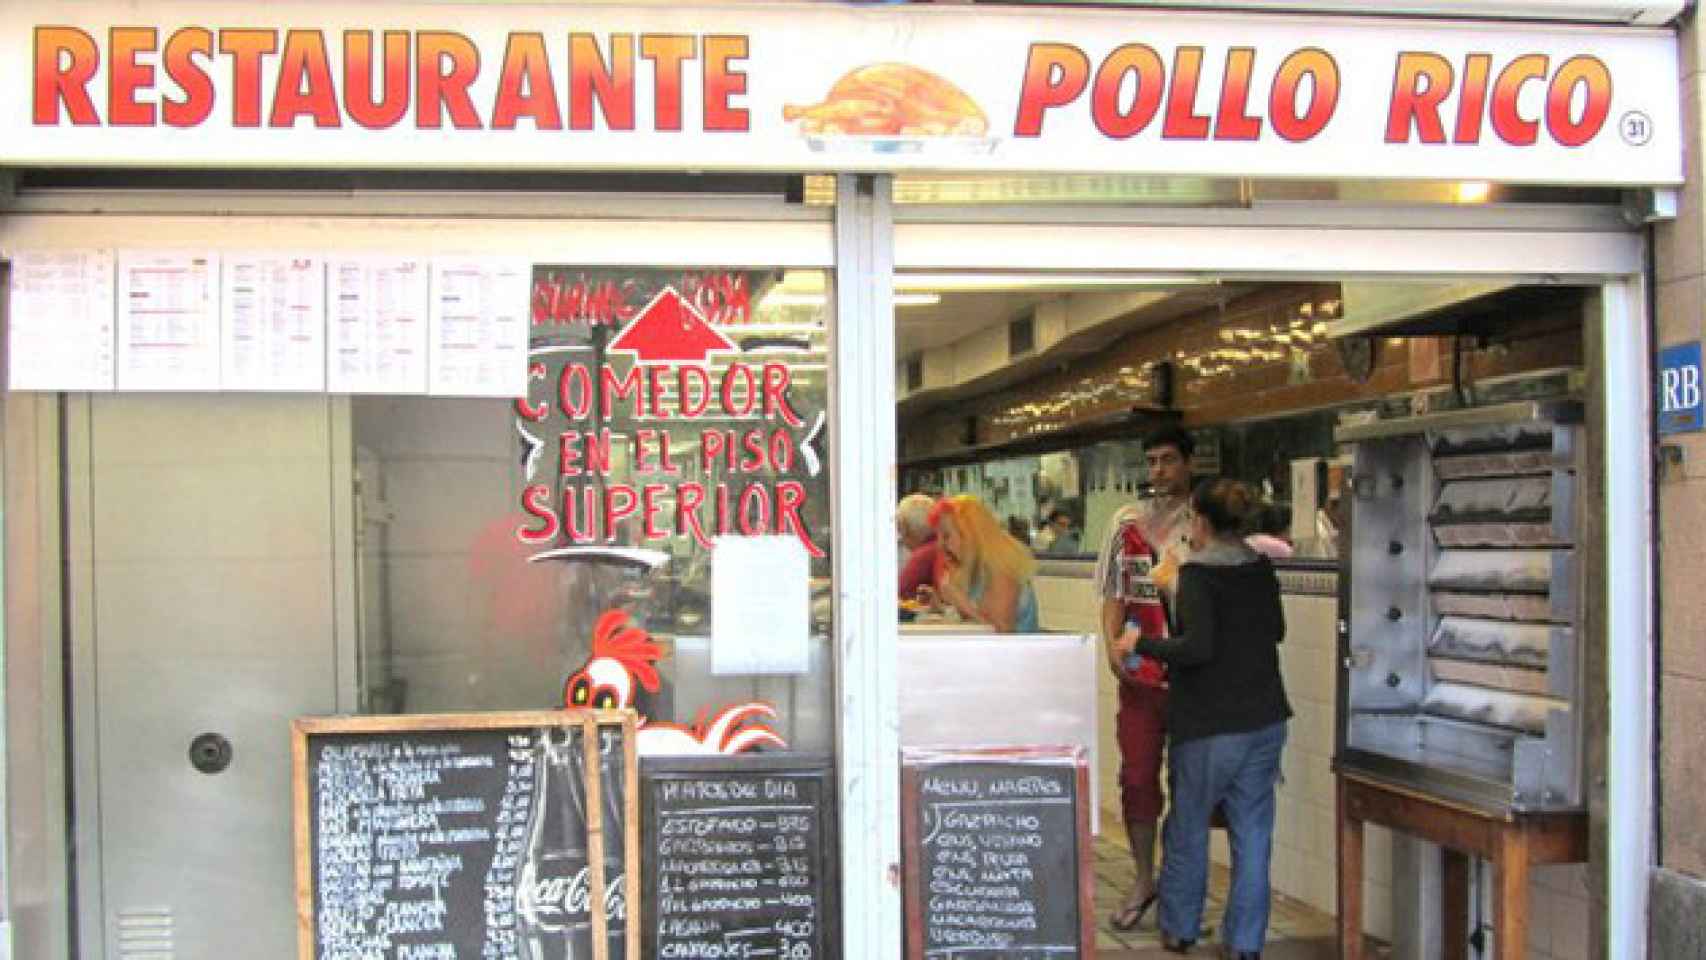 El restaurante Pollo Rico, uno de los históricos del Raval, cerrará el martes 29 de agosto / CG